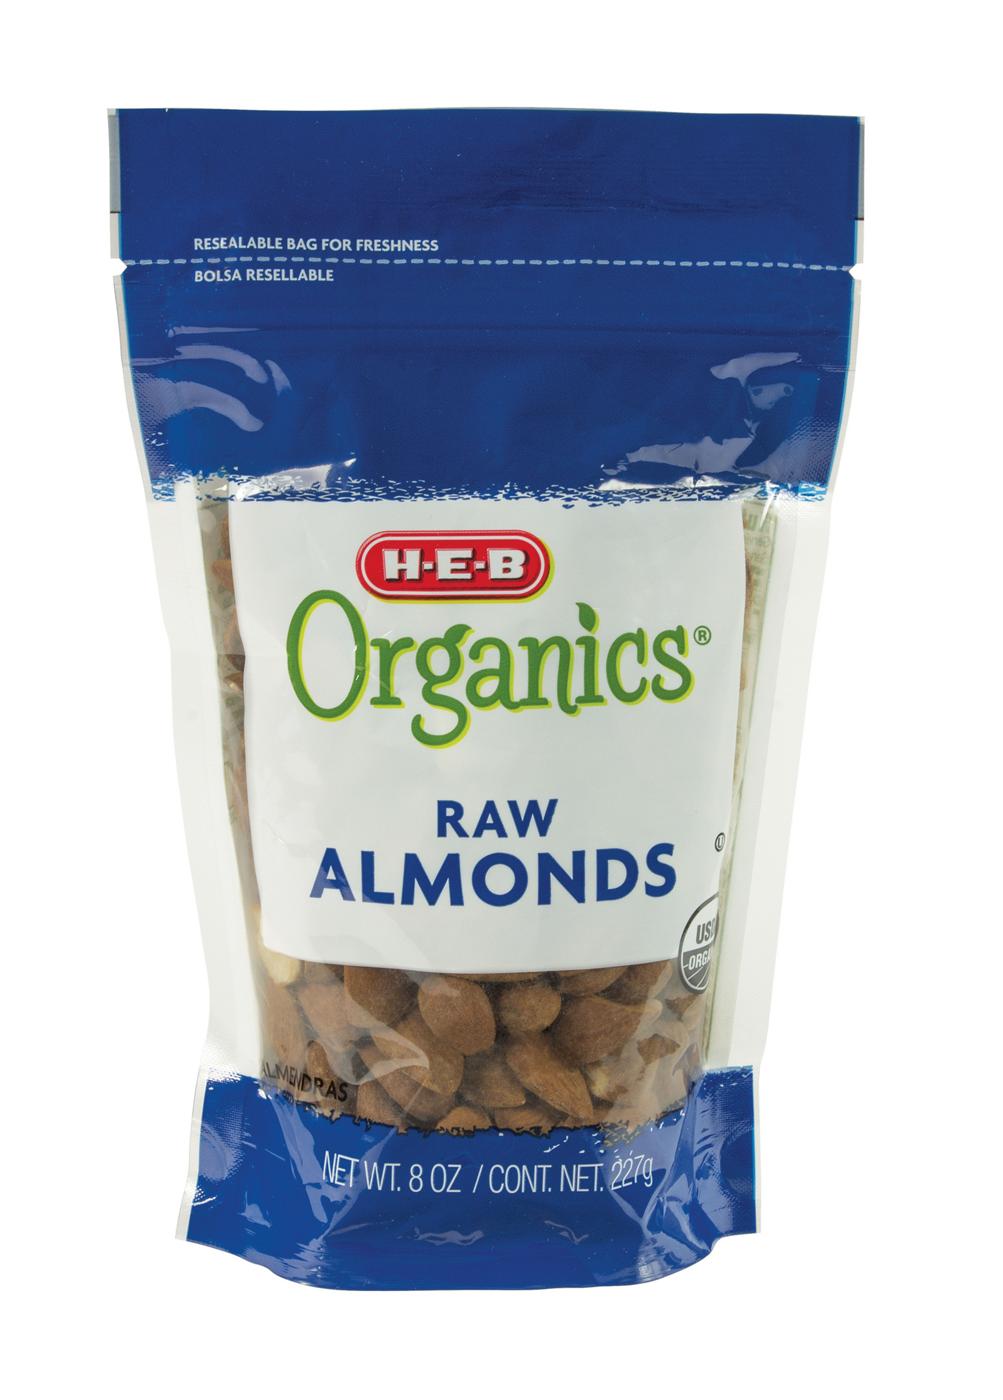 H-E-B Organics Raw Almonds; image 1 of 2